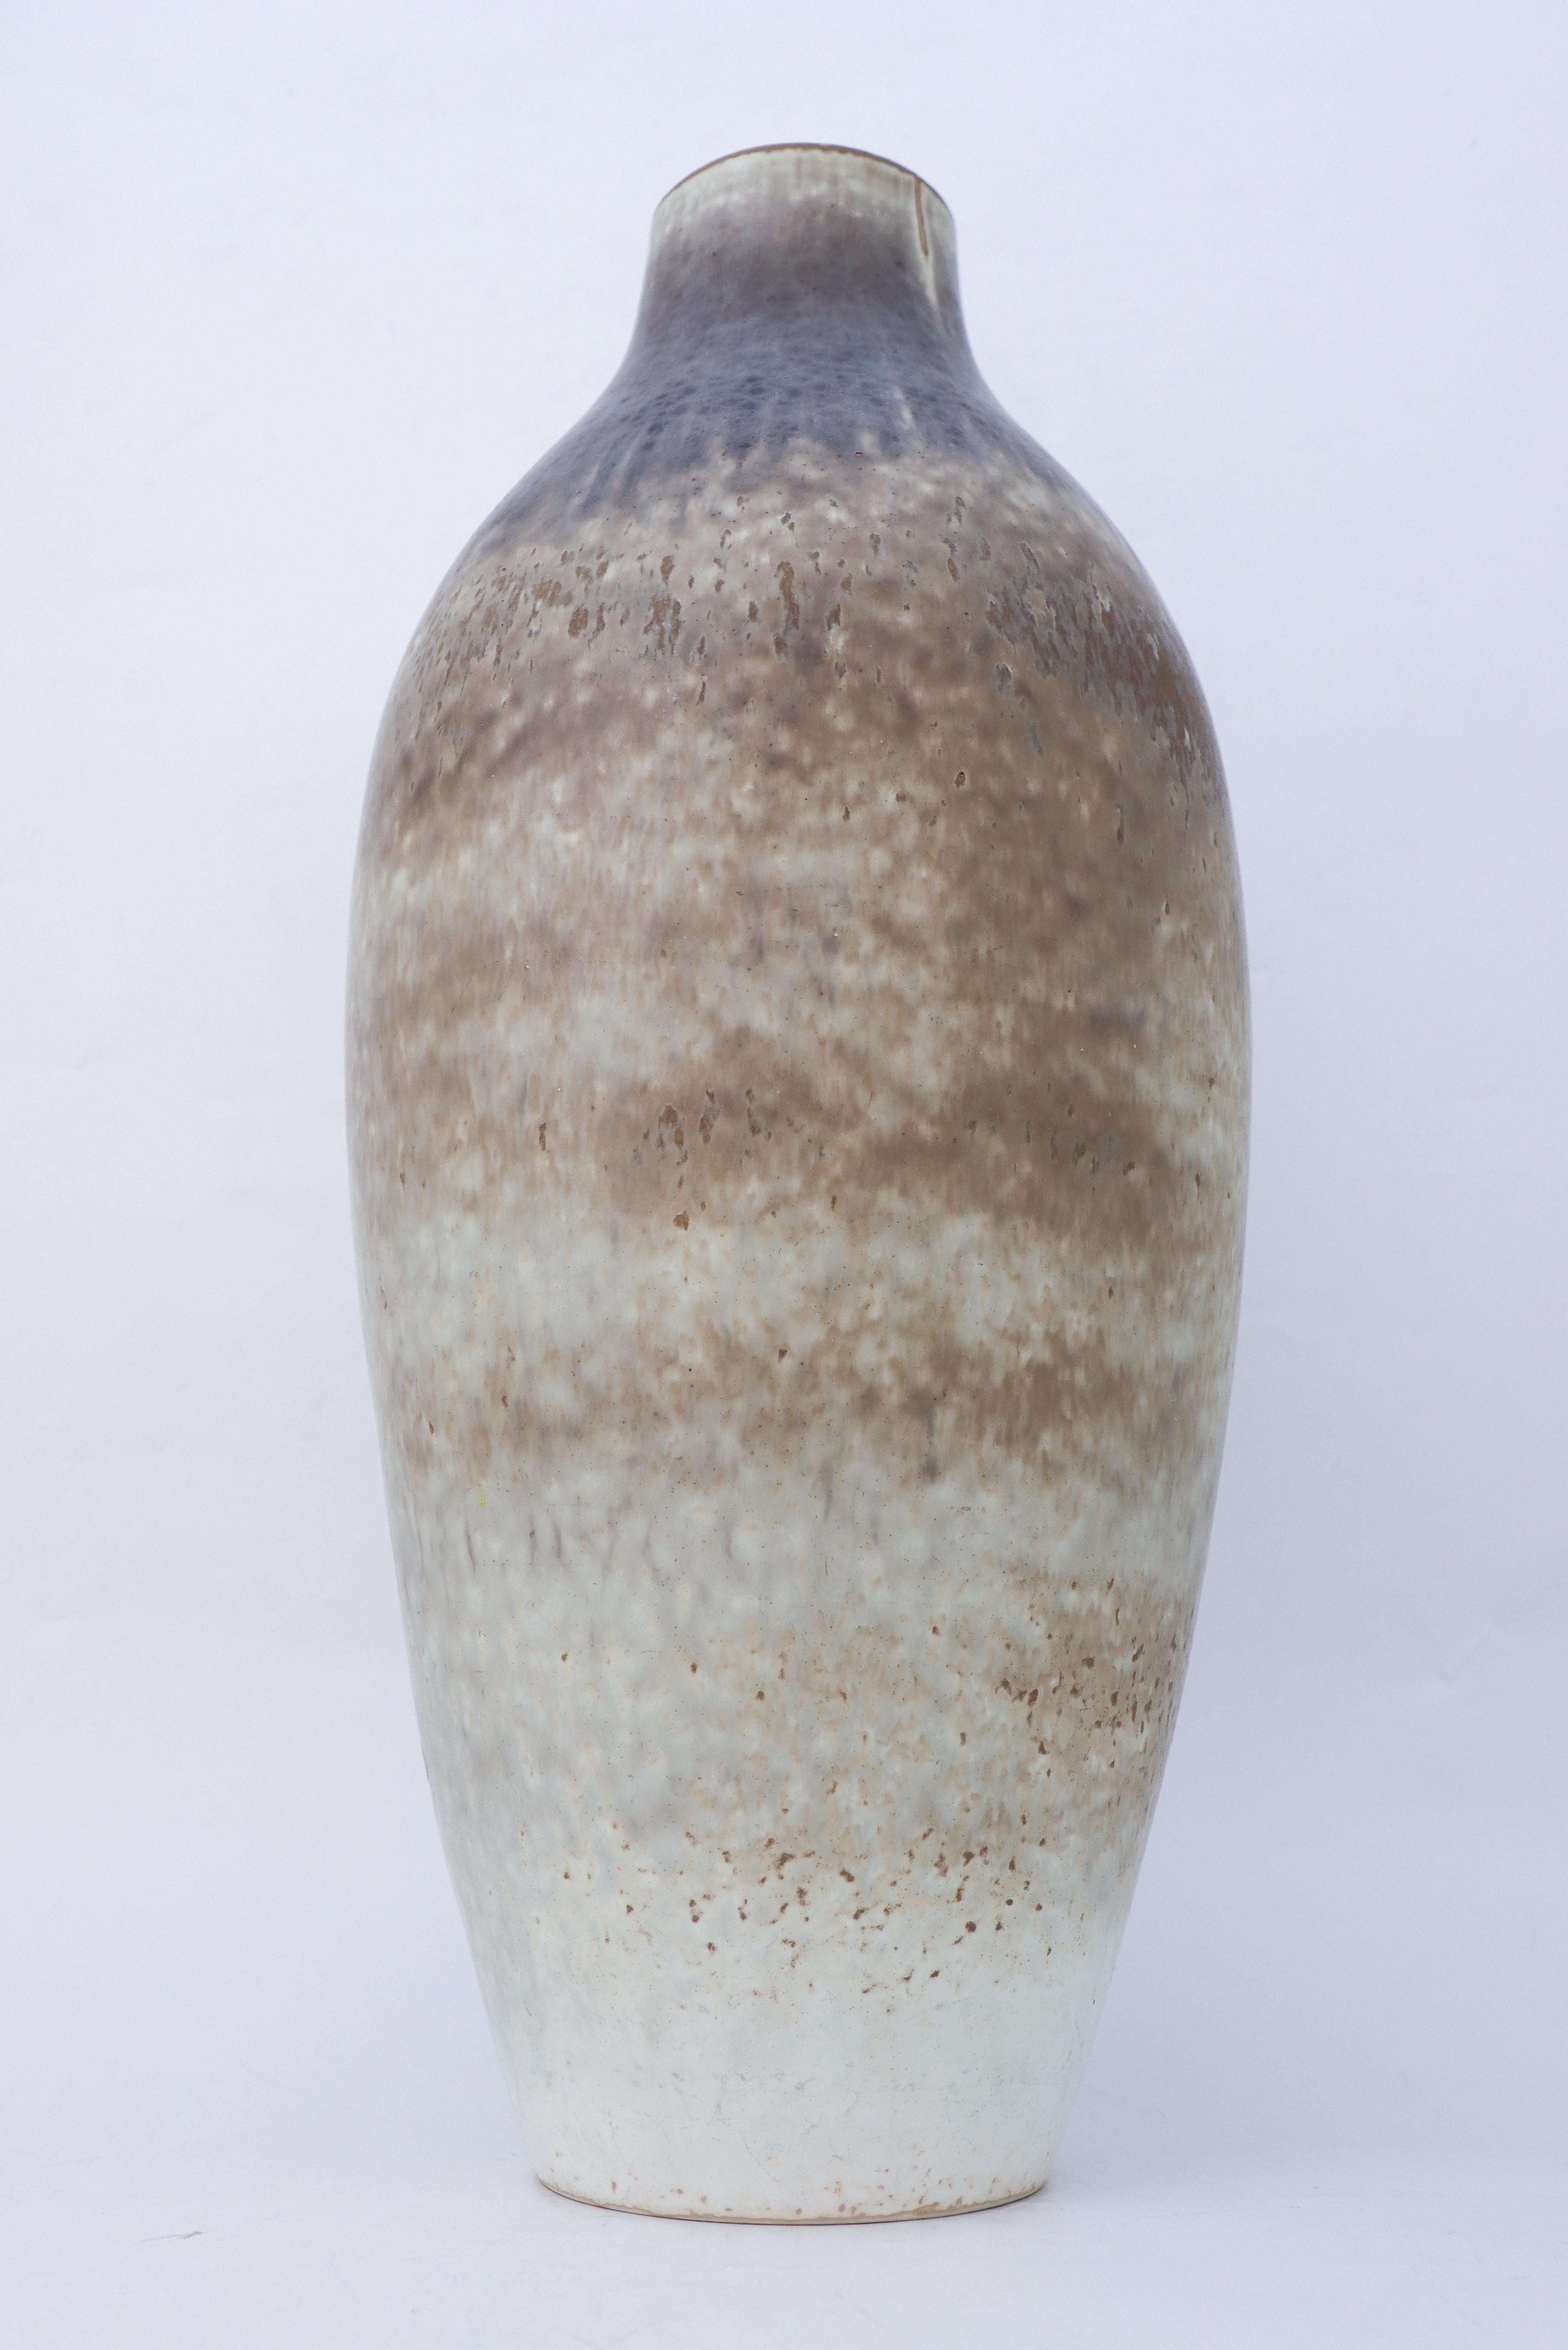 Grand vase en céramique de Carl-Harry Stålhane avec une belle glaçure grise mouchetée. Il a été fabriqué dans les années 1950. Le vase est marqué comme étant de 2ème qualité en raison de la marque dans la glaçure, voir la photo détaillée. A part